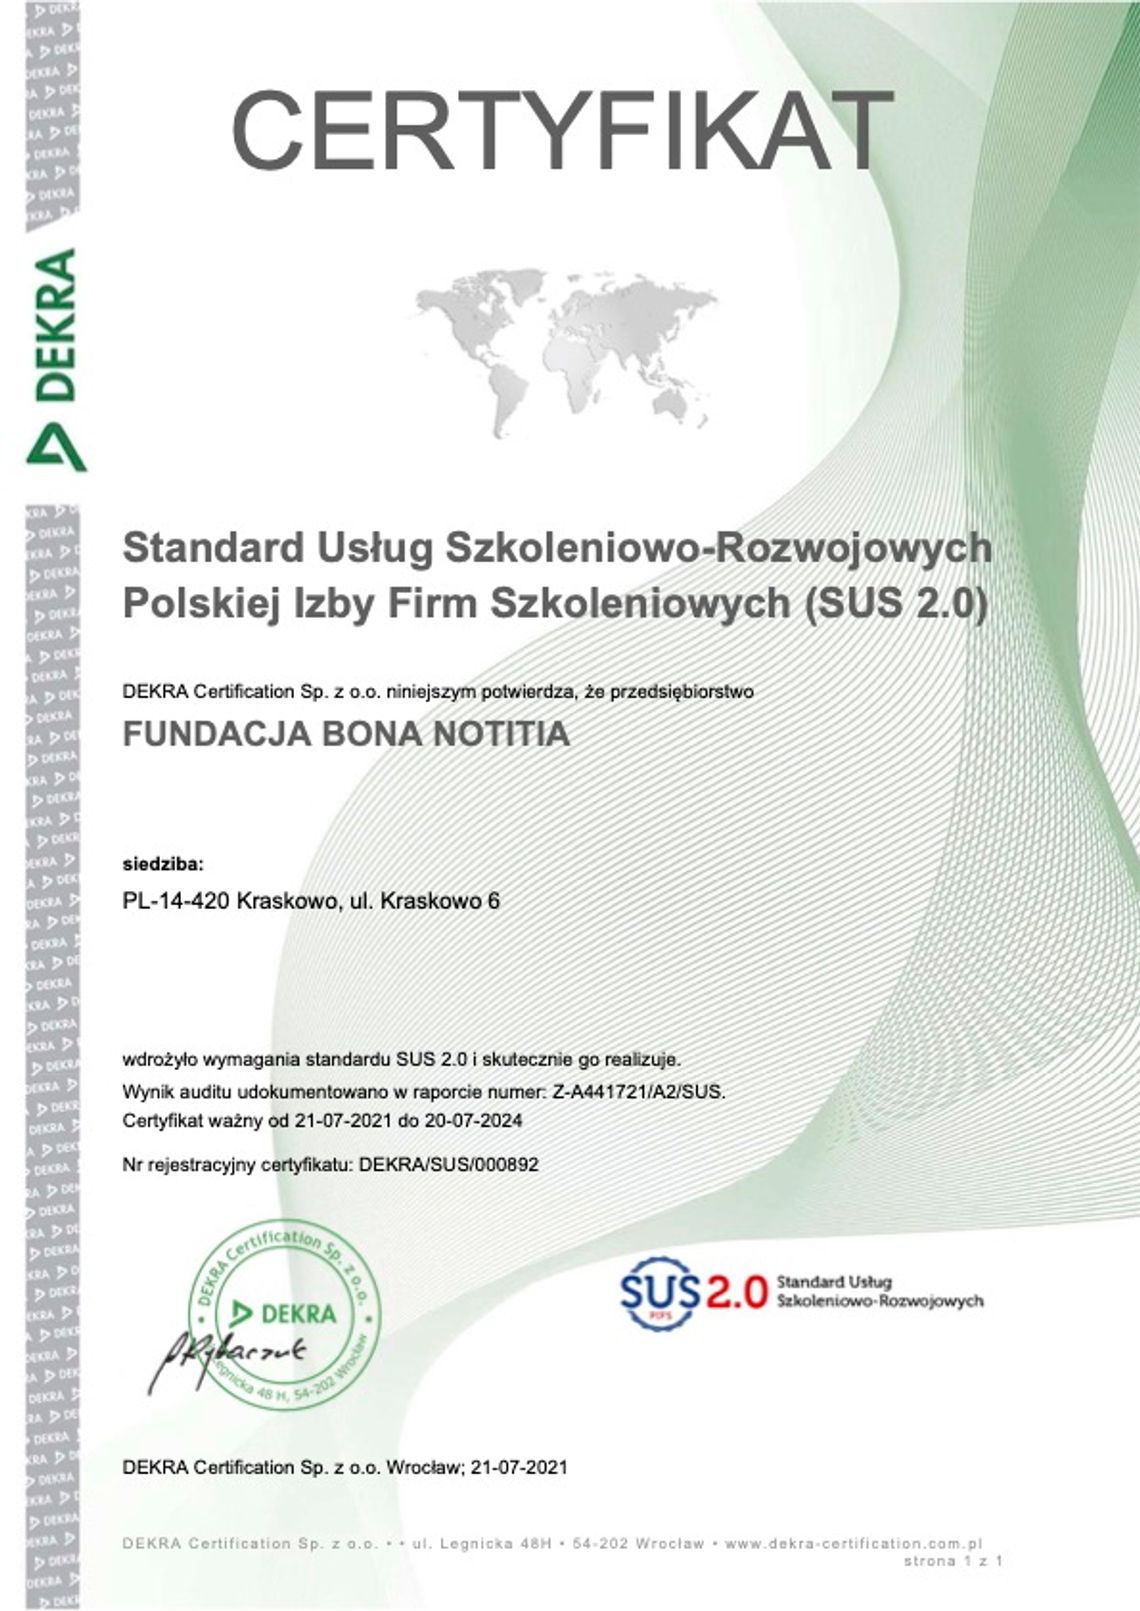 Fundacja Bona Notitia otrzymuje certyfikat Polskiej Izby Firm Szkoleniowych SUS 2.0